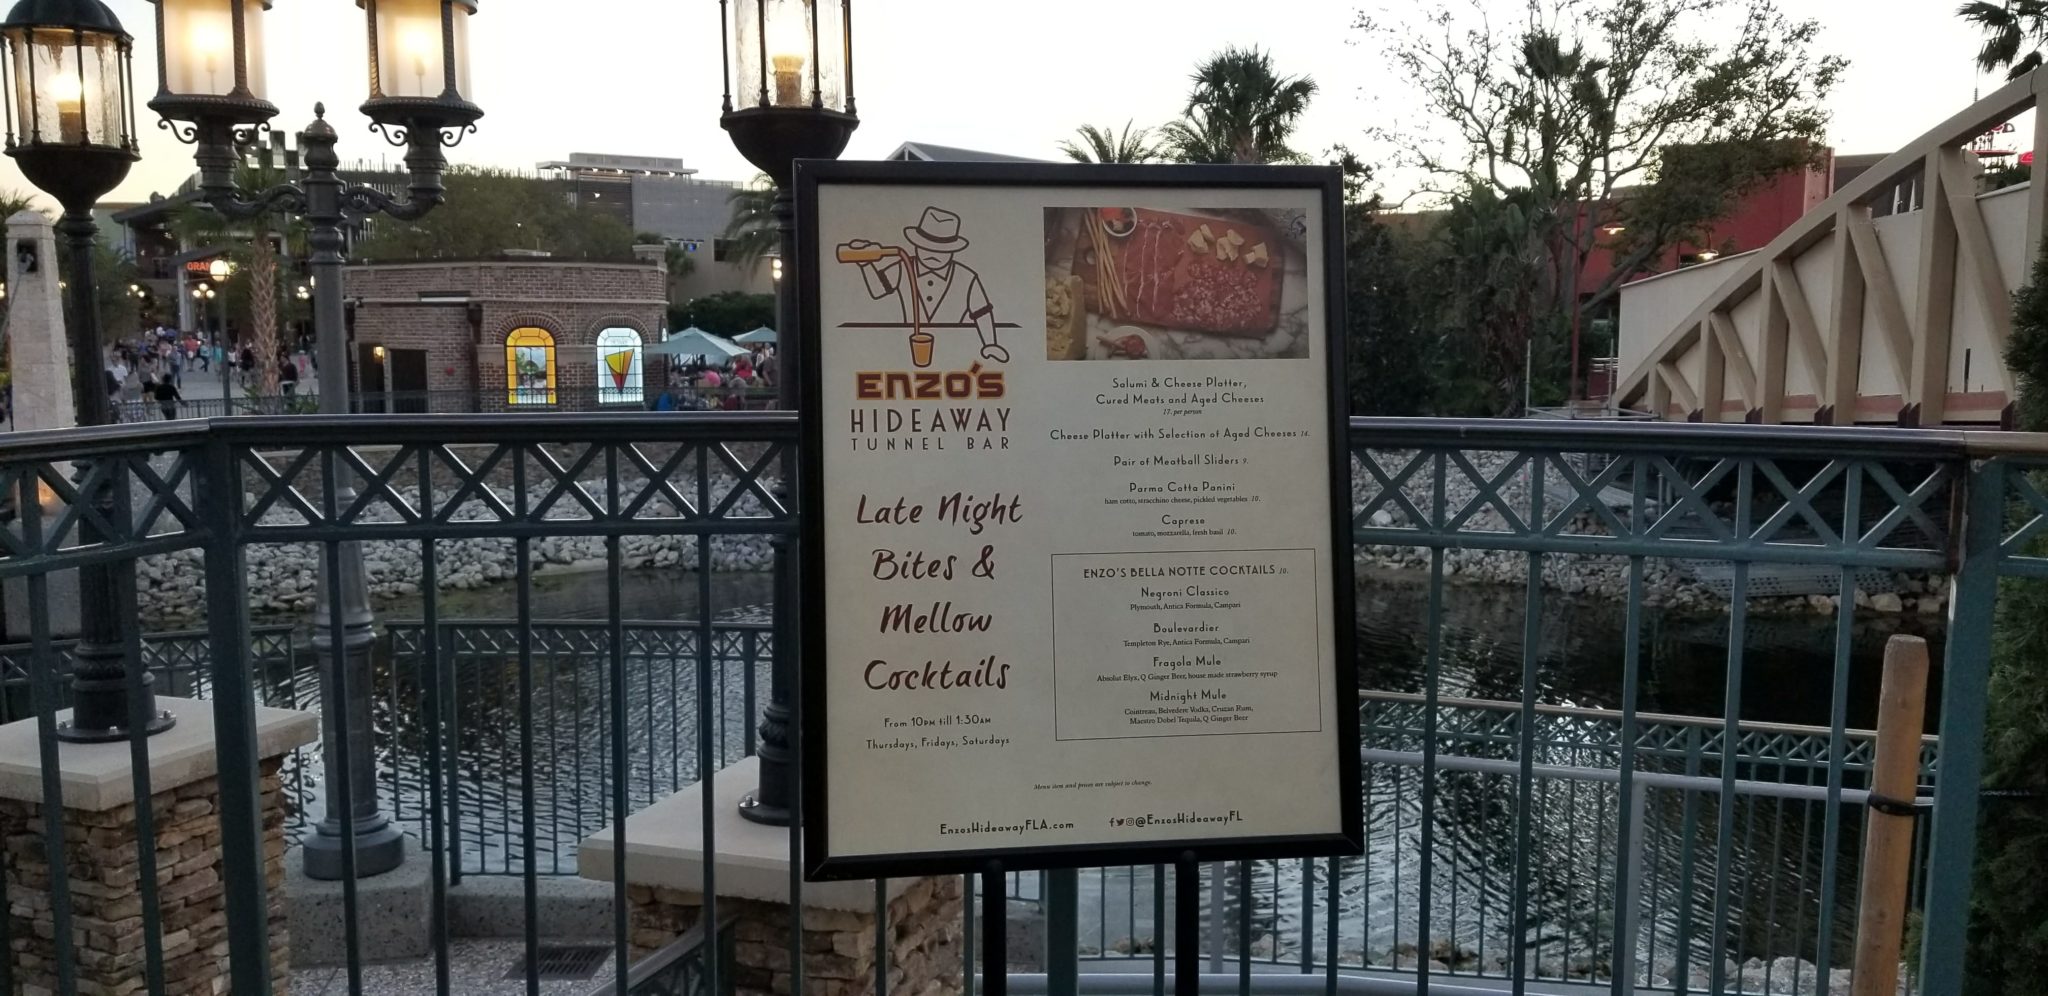 Enzo’s Hideaway in Disney Springs is a true hidden gem